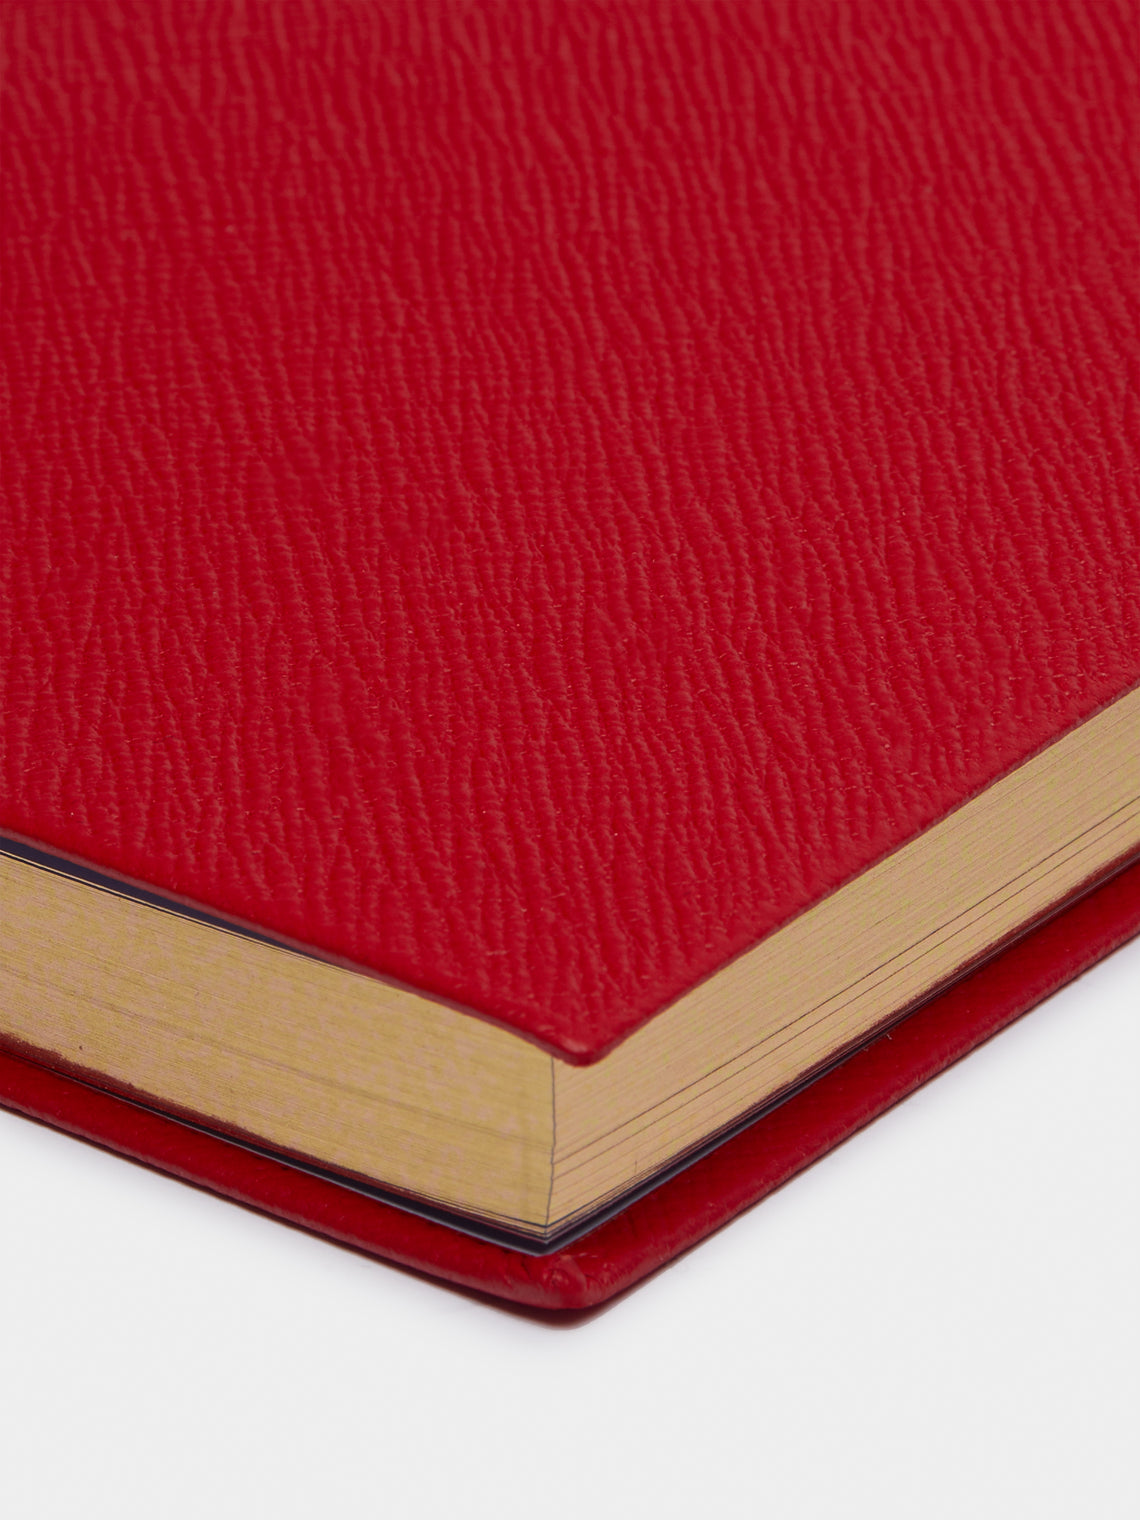 Smythson - Soho Leather Notebook - Red - ABASK